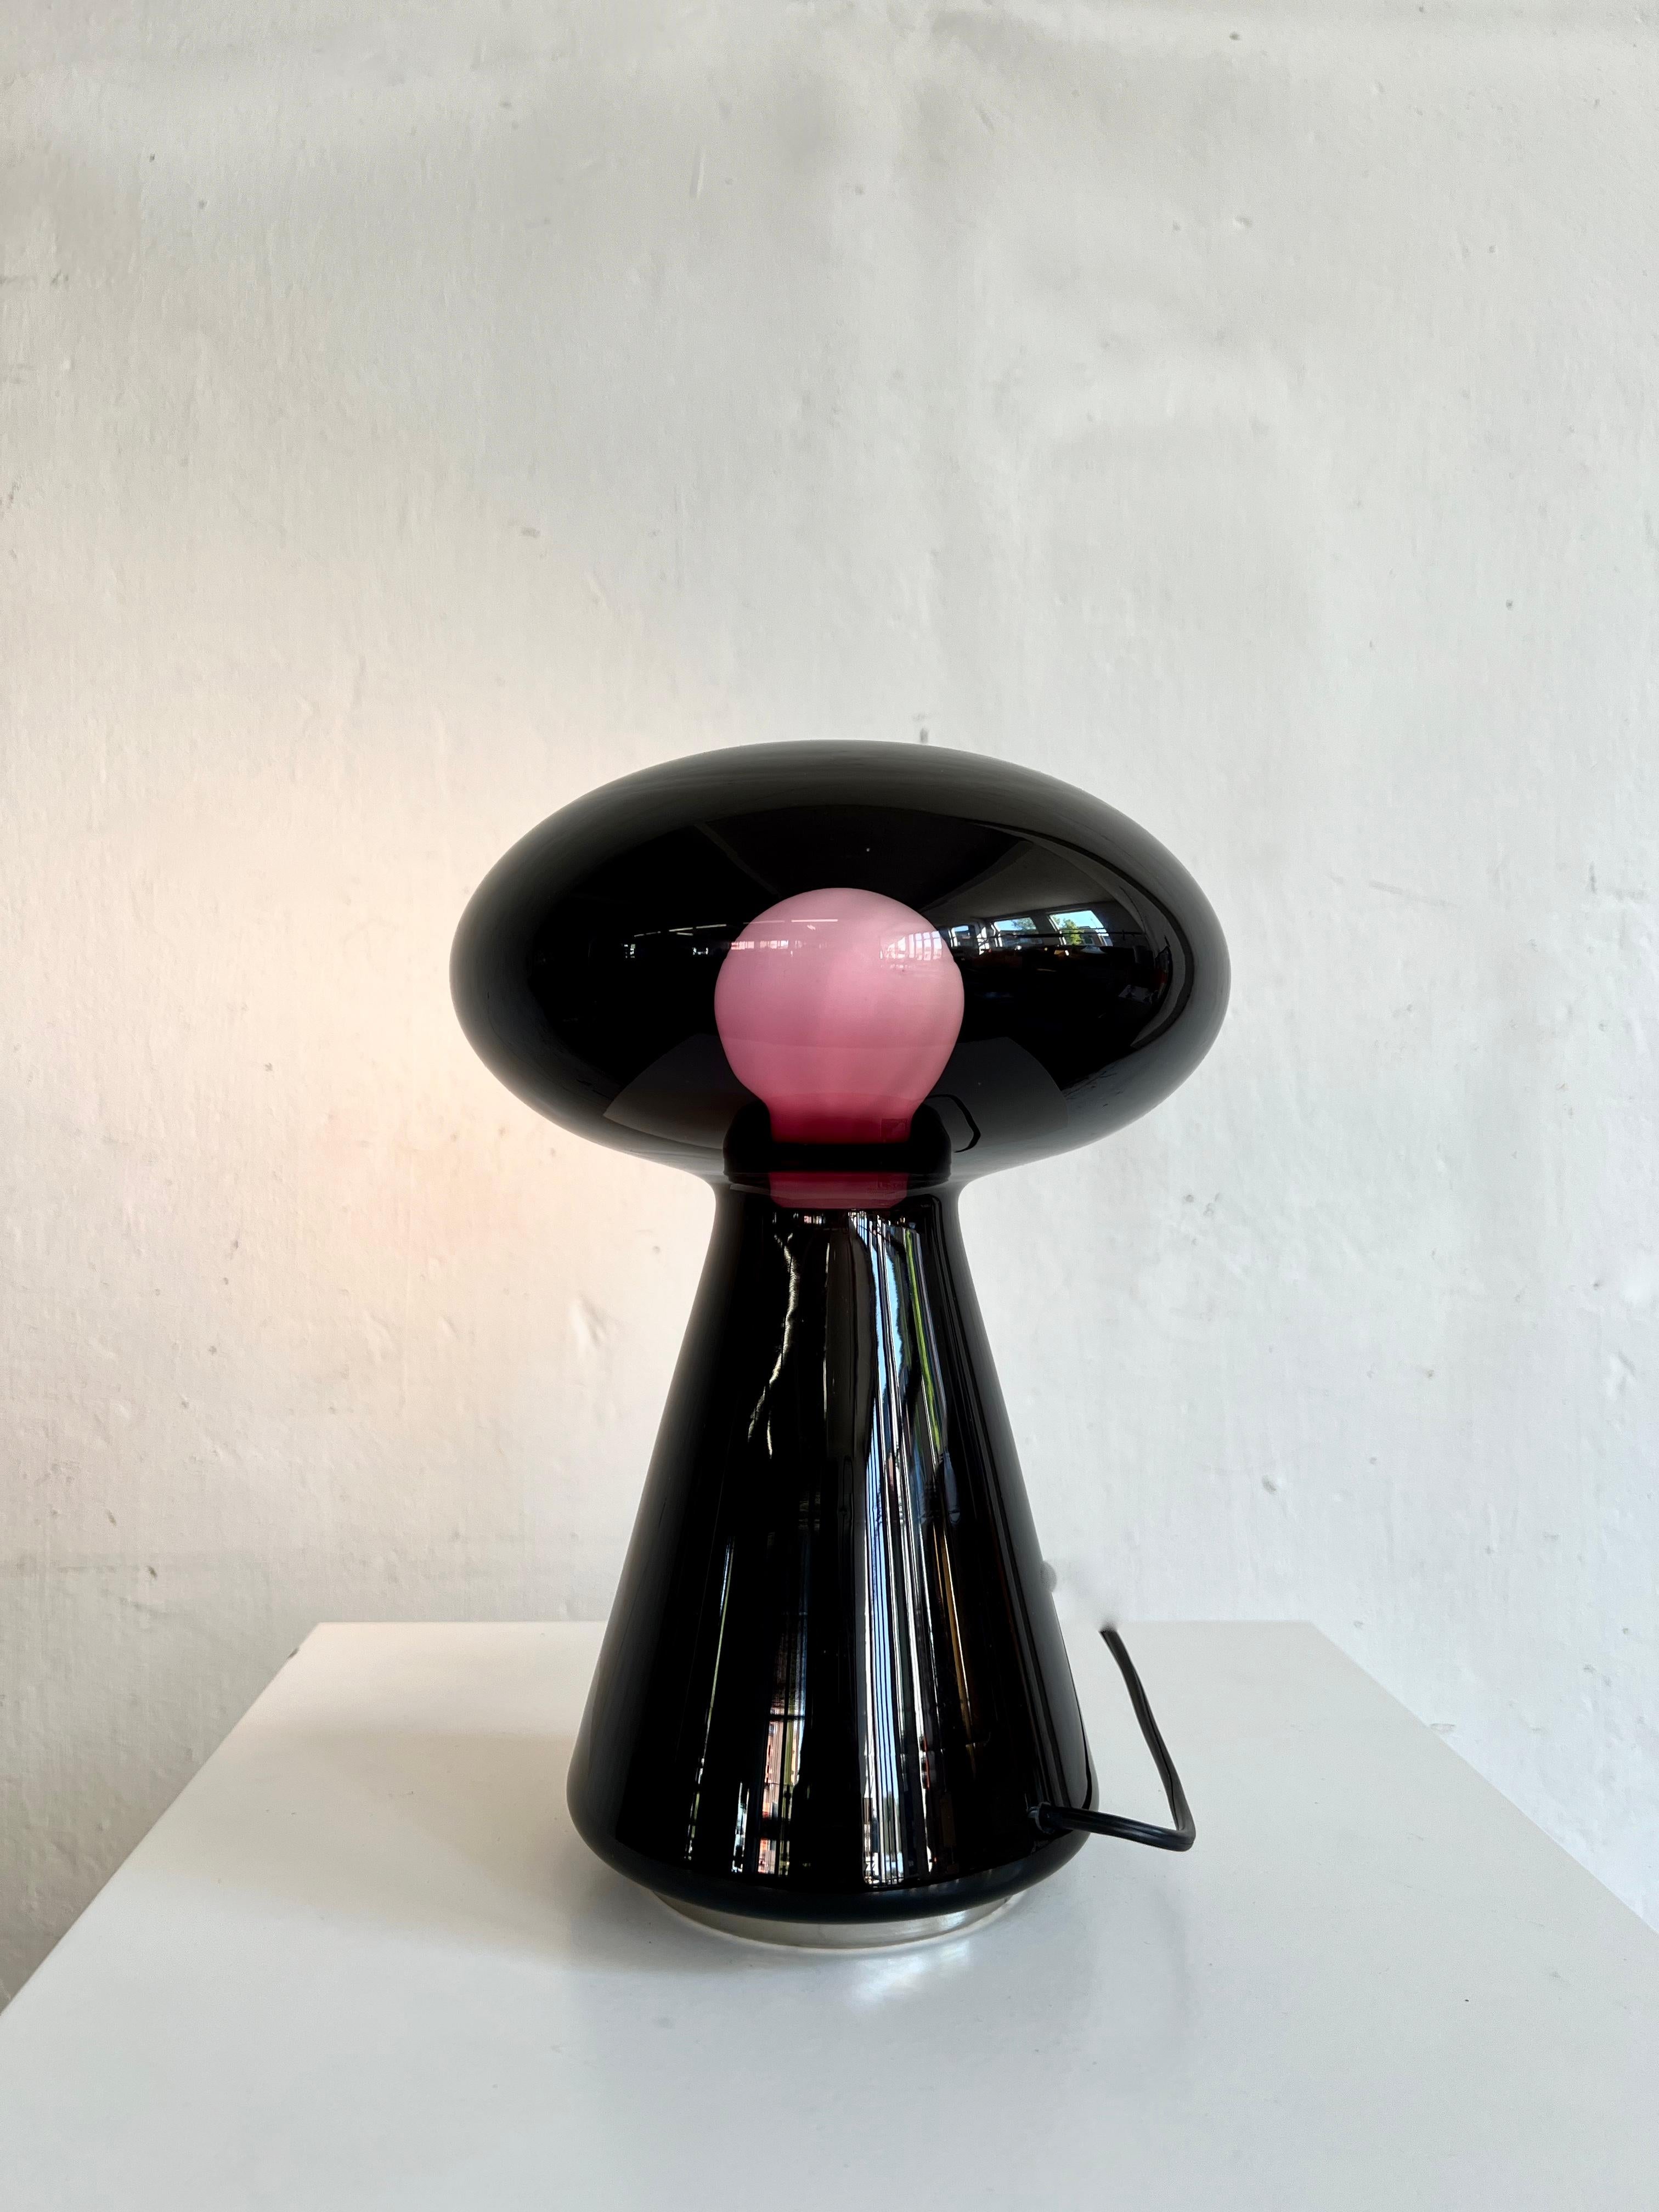 Très rare lampe de table en verre soufflé à la bouche noir-violet de Vistosi, 1970. Conçu par Michael Red. Modèle L423.
 
Le verre semble être noir, mais lorsqu'il est allumé, le pourtour de l'ampoule est violet. Une qualité étonnante tant au niveau